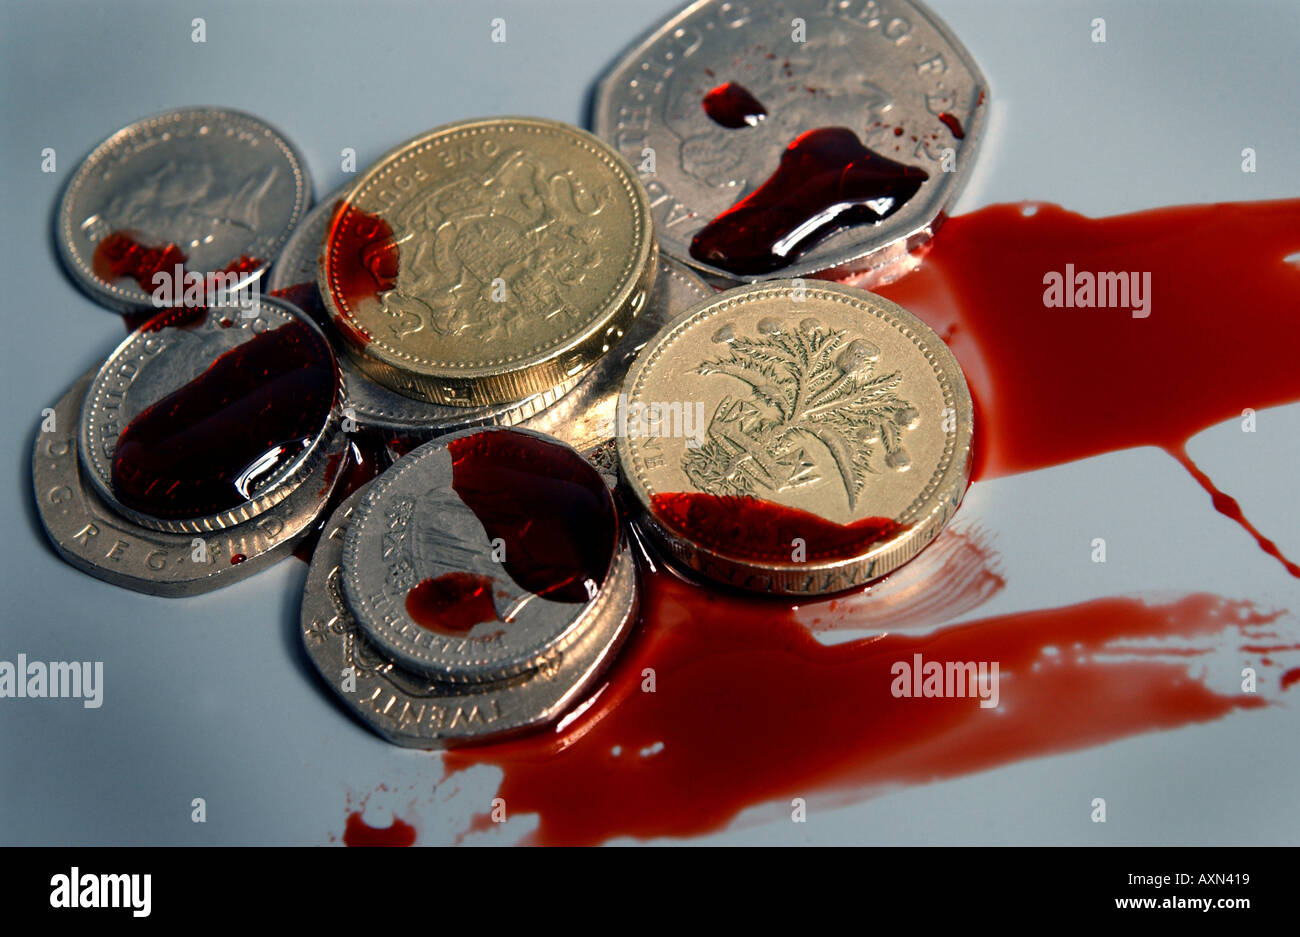 Pièces argent sterling britannique avec du sang Banque D'Images